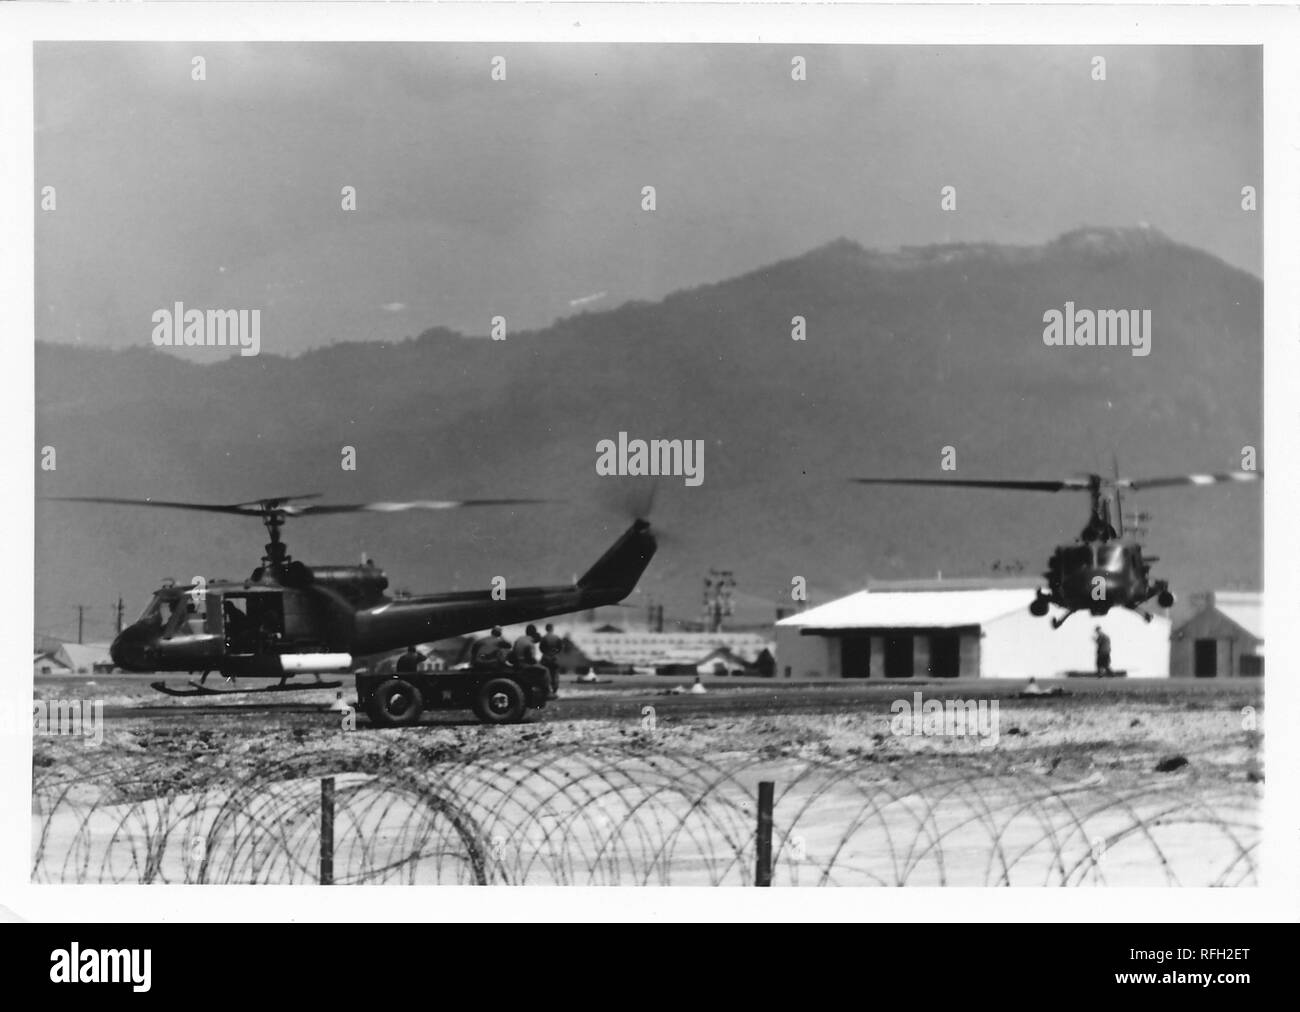 Fotografia in bianco e nero, che mostra due Bell UH-1 Iroquois ("Huey") elicotteri, sia di atterraggio o di decollo da una base militare, con diversi uomini in un aperto Jeep e caserme o edifici amministrativi visibile sullo sfondo, fotografato durante la Guerra del Vietnam, 1968. () Foto Stock